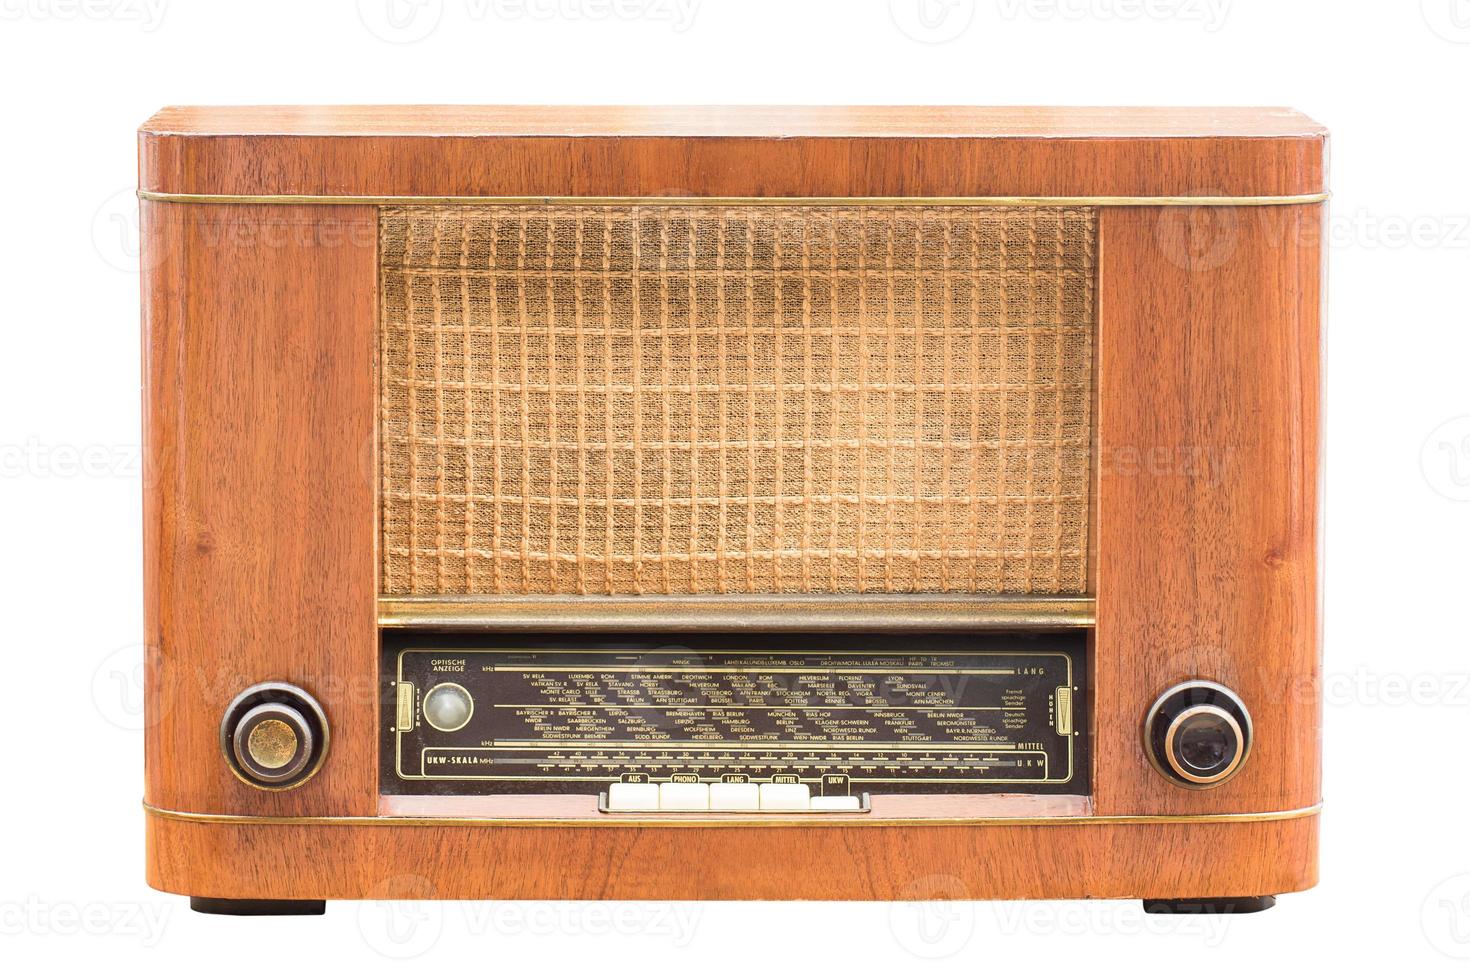 Vintage-Radio auf dem Weiß foto